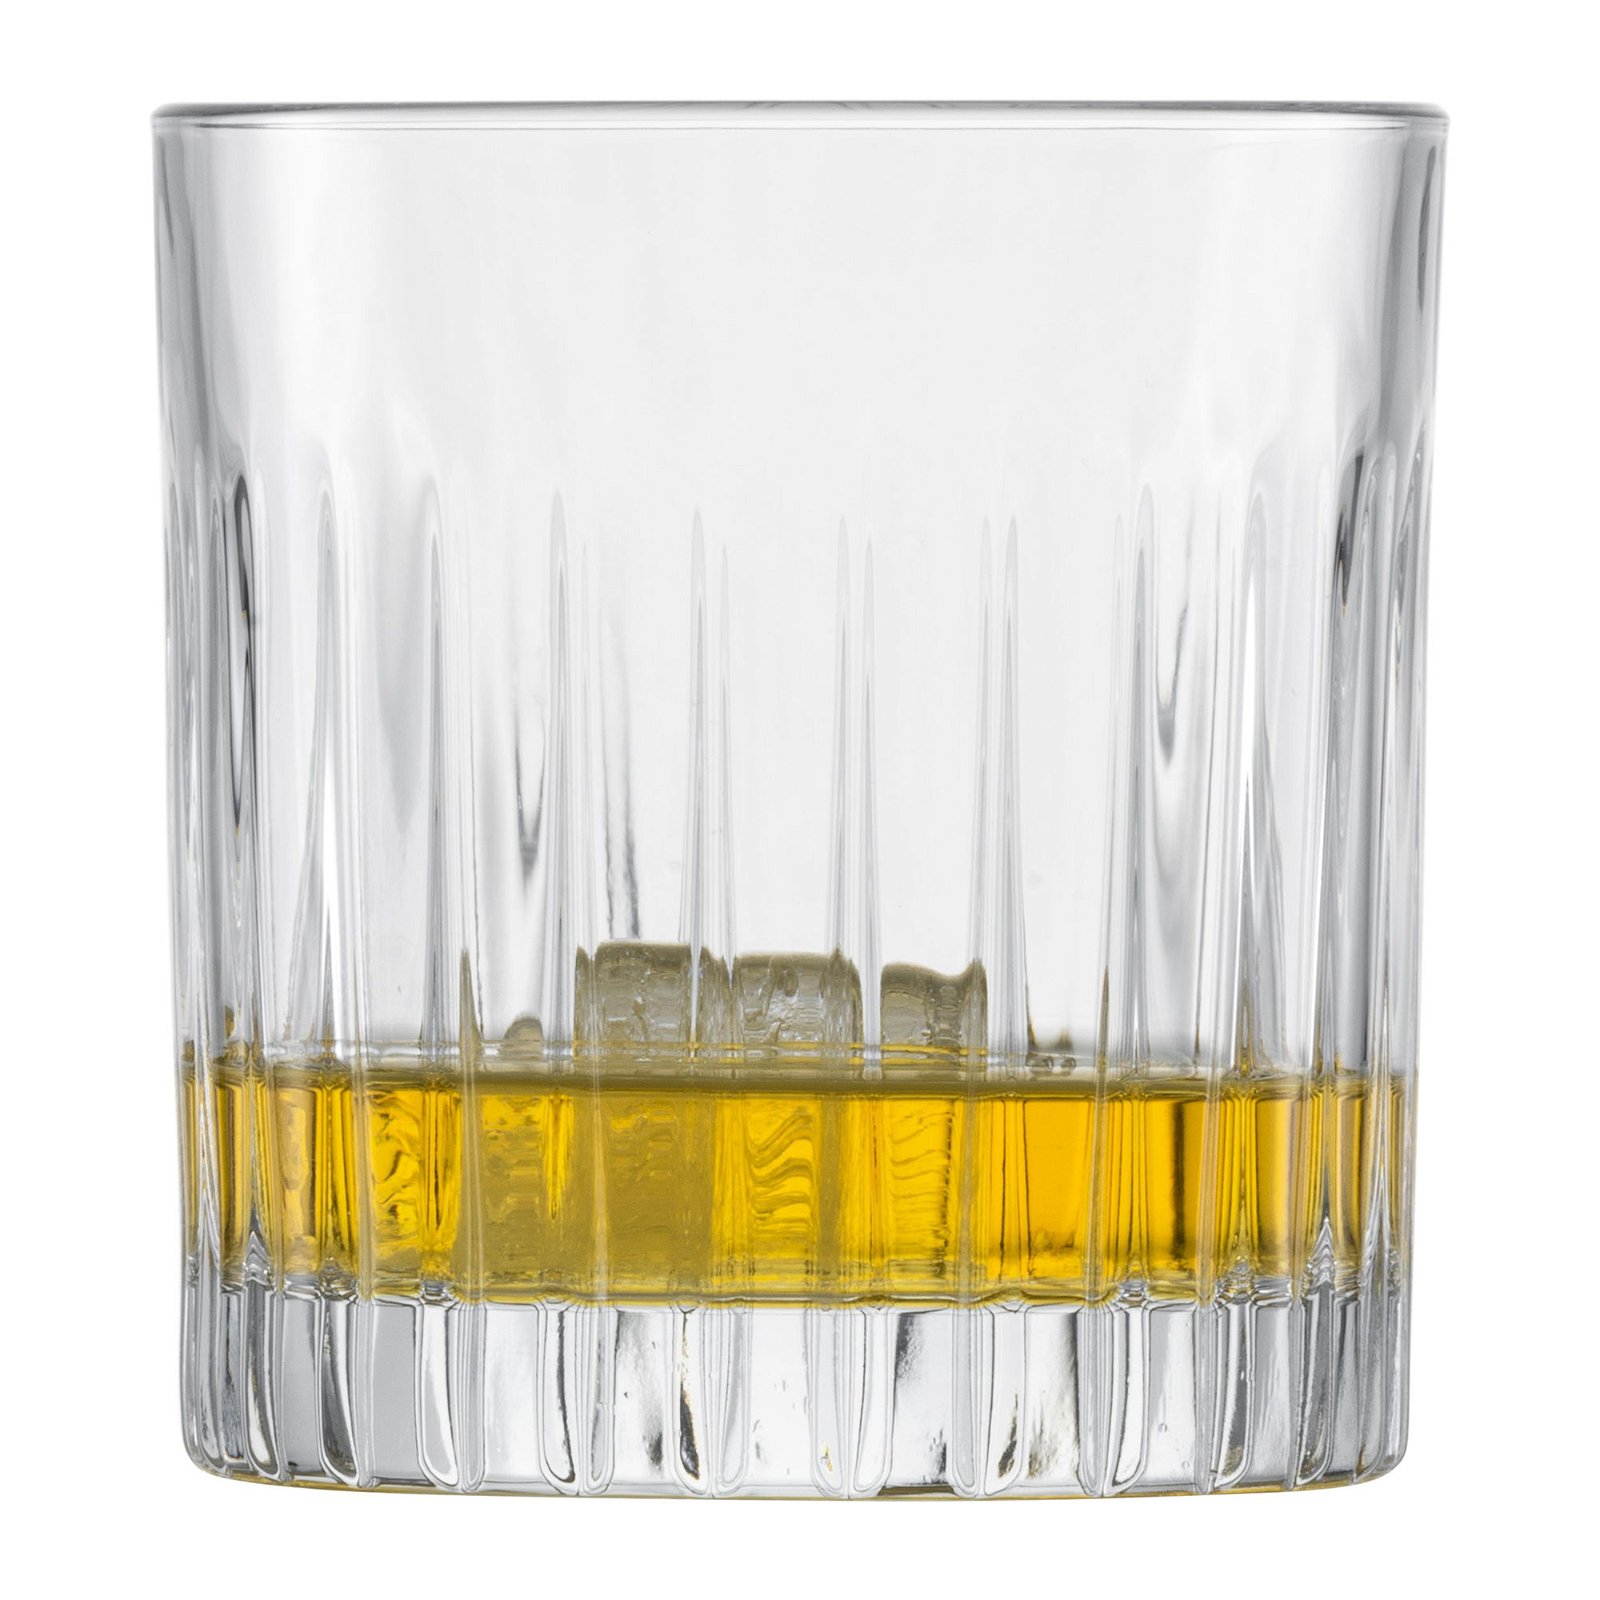 Stage 4er Whiskyglas